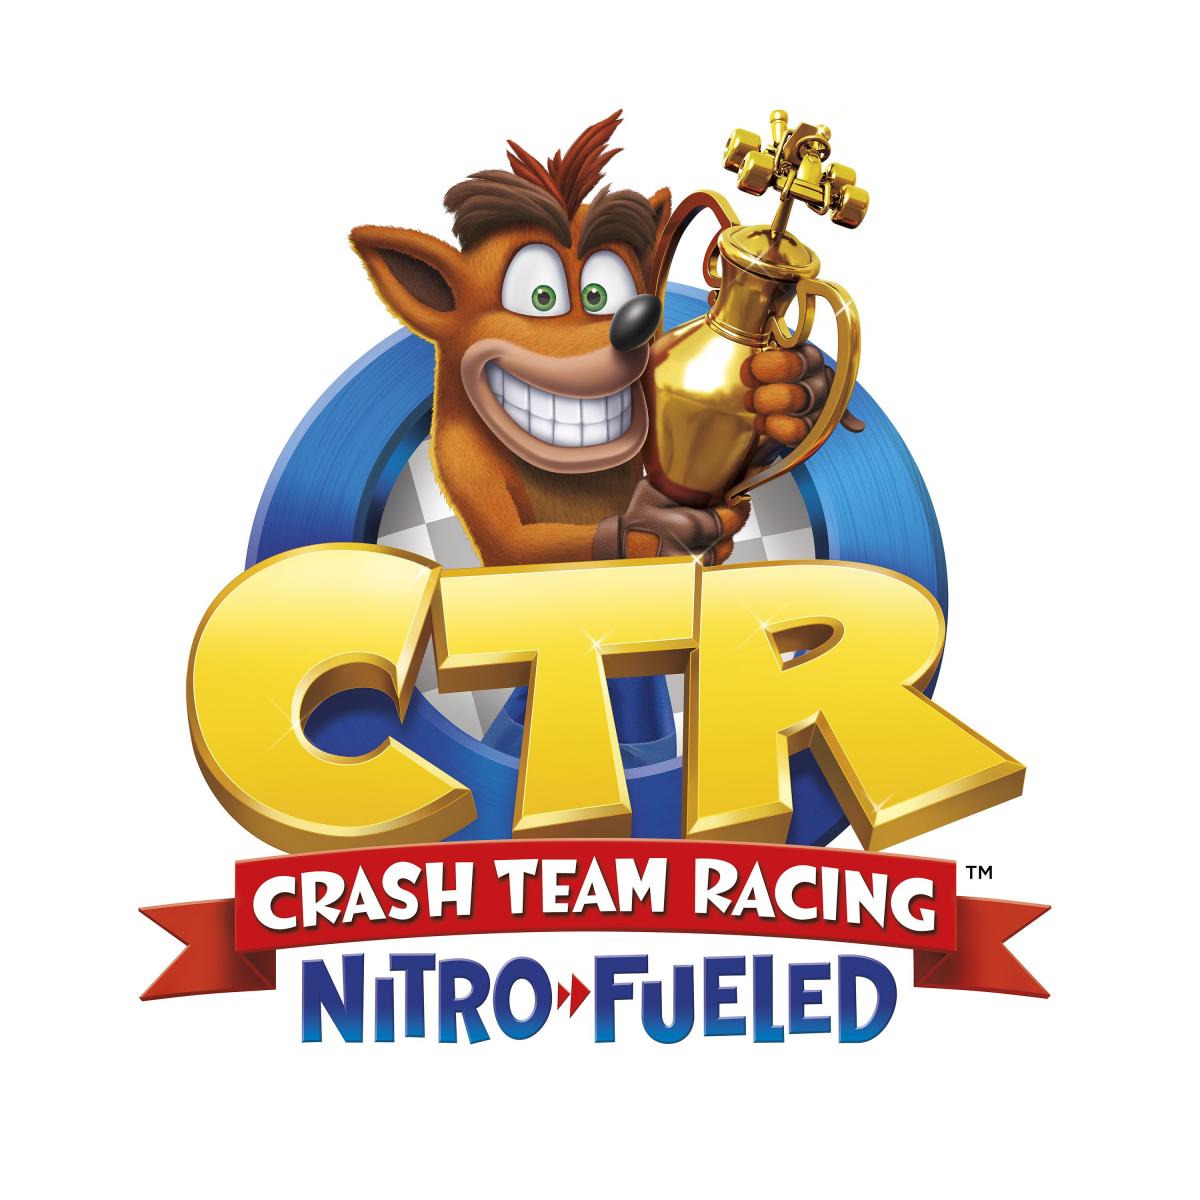 Image Crash Team Racing Nitro-Fueled 6